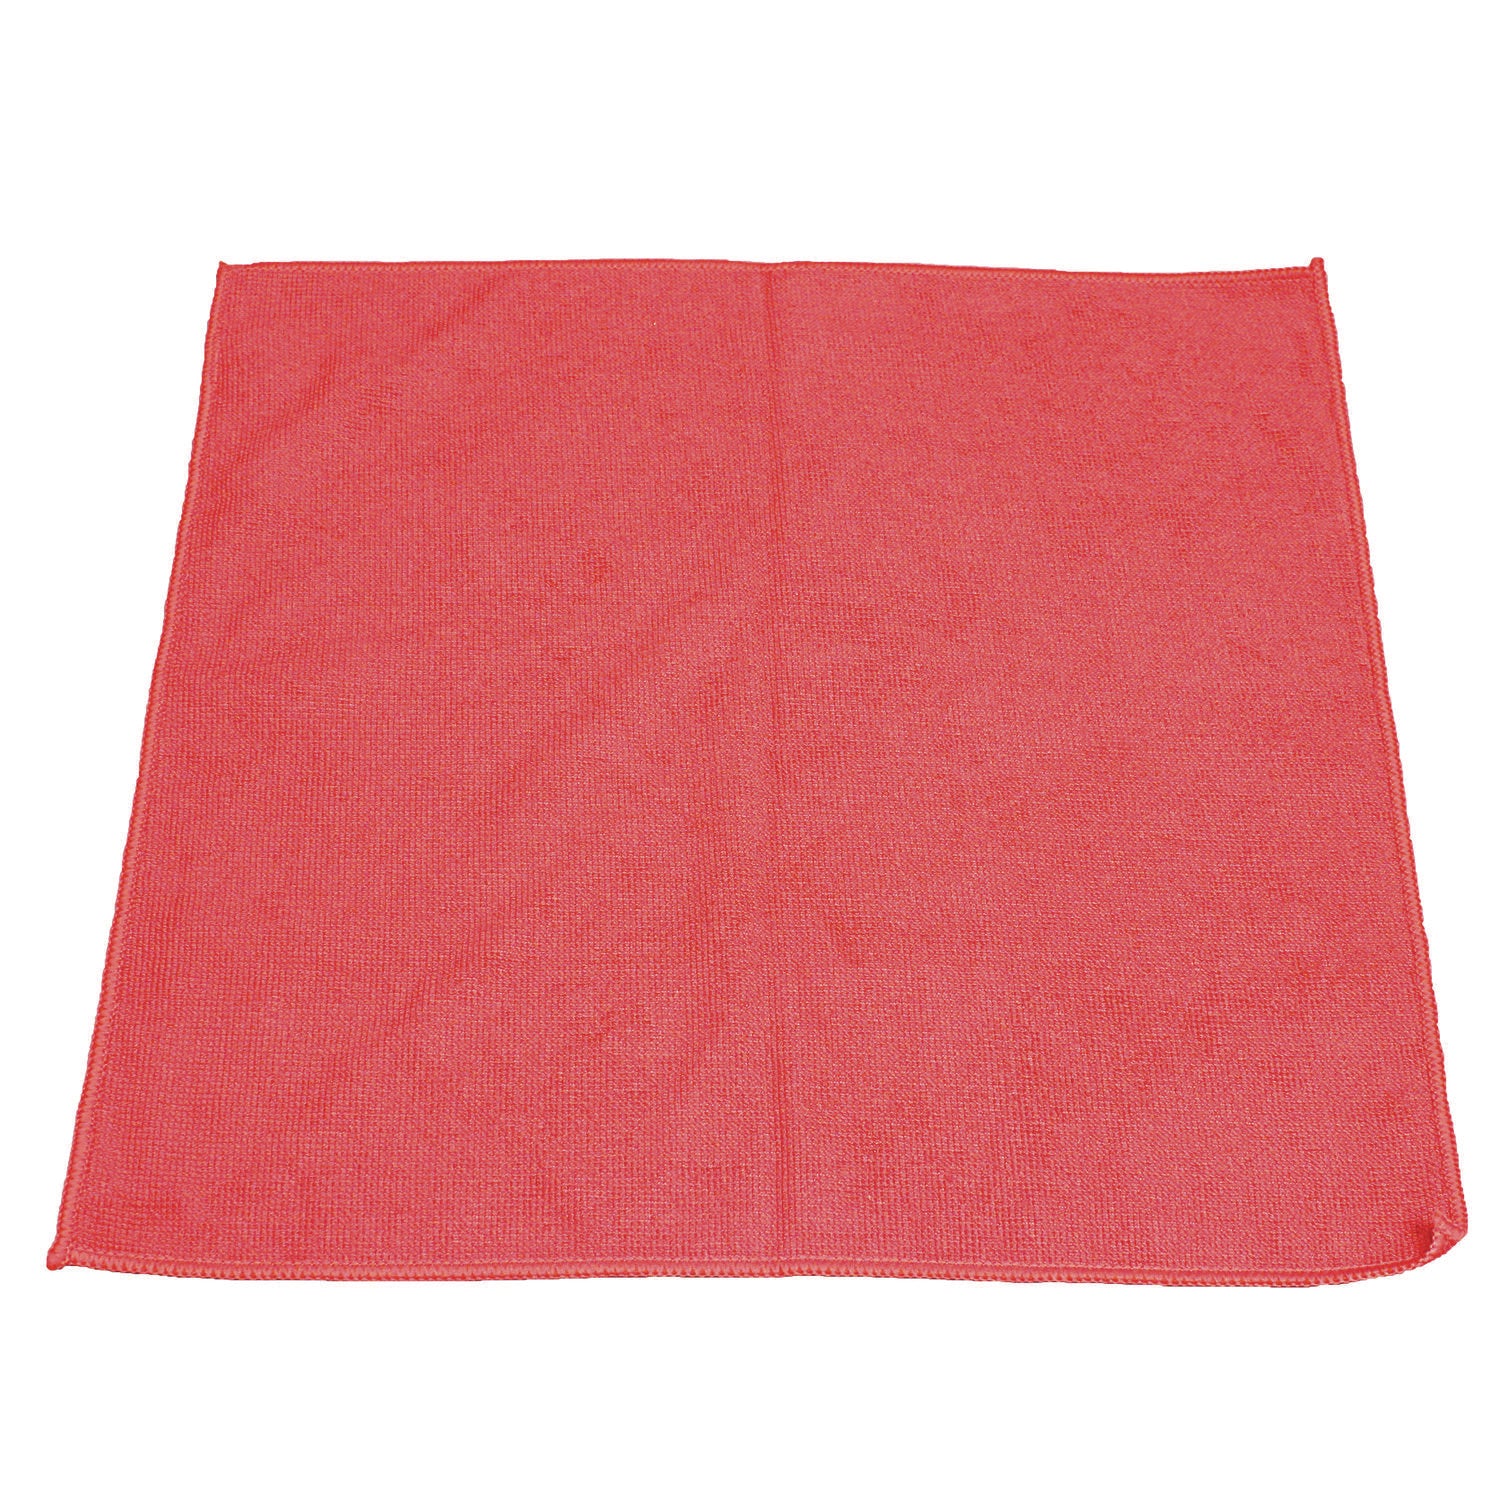 Lightweight Microfiber Cloths, 16 x 16, Red, 240/Carton - 1